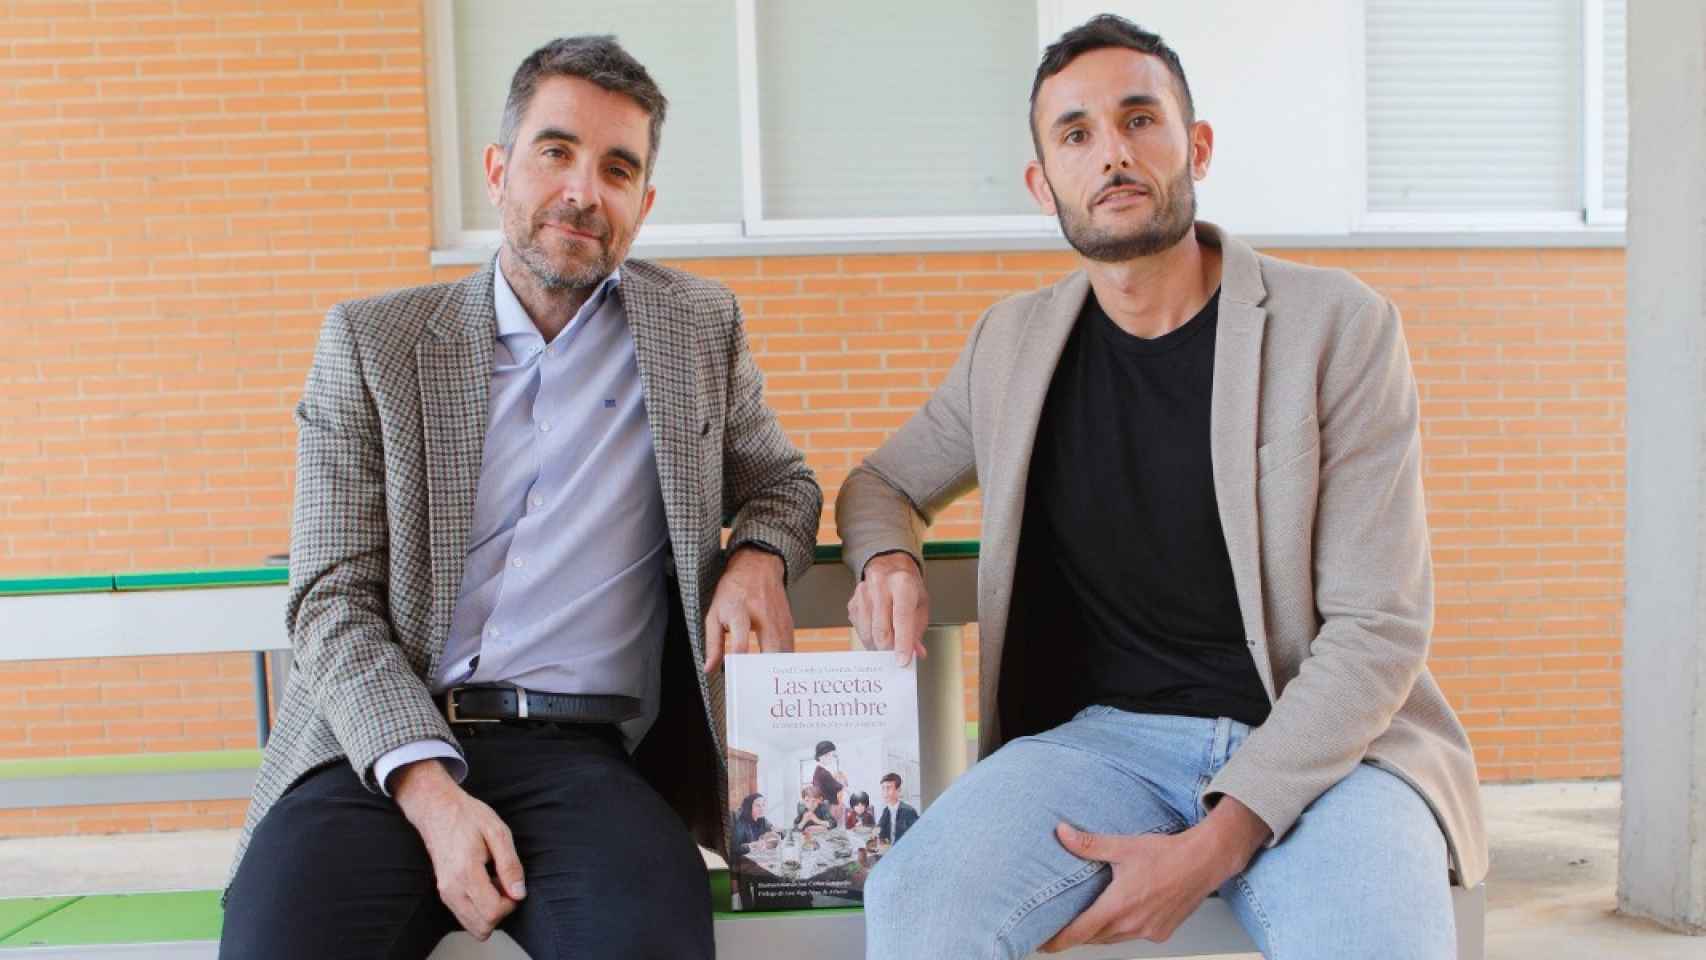 Los antropólogos Lorenzo Mariano y David Conde, autores de 'Las recetas del hambre'.